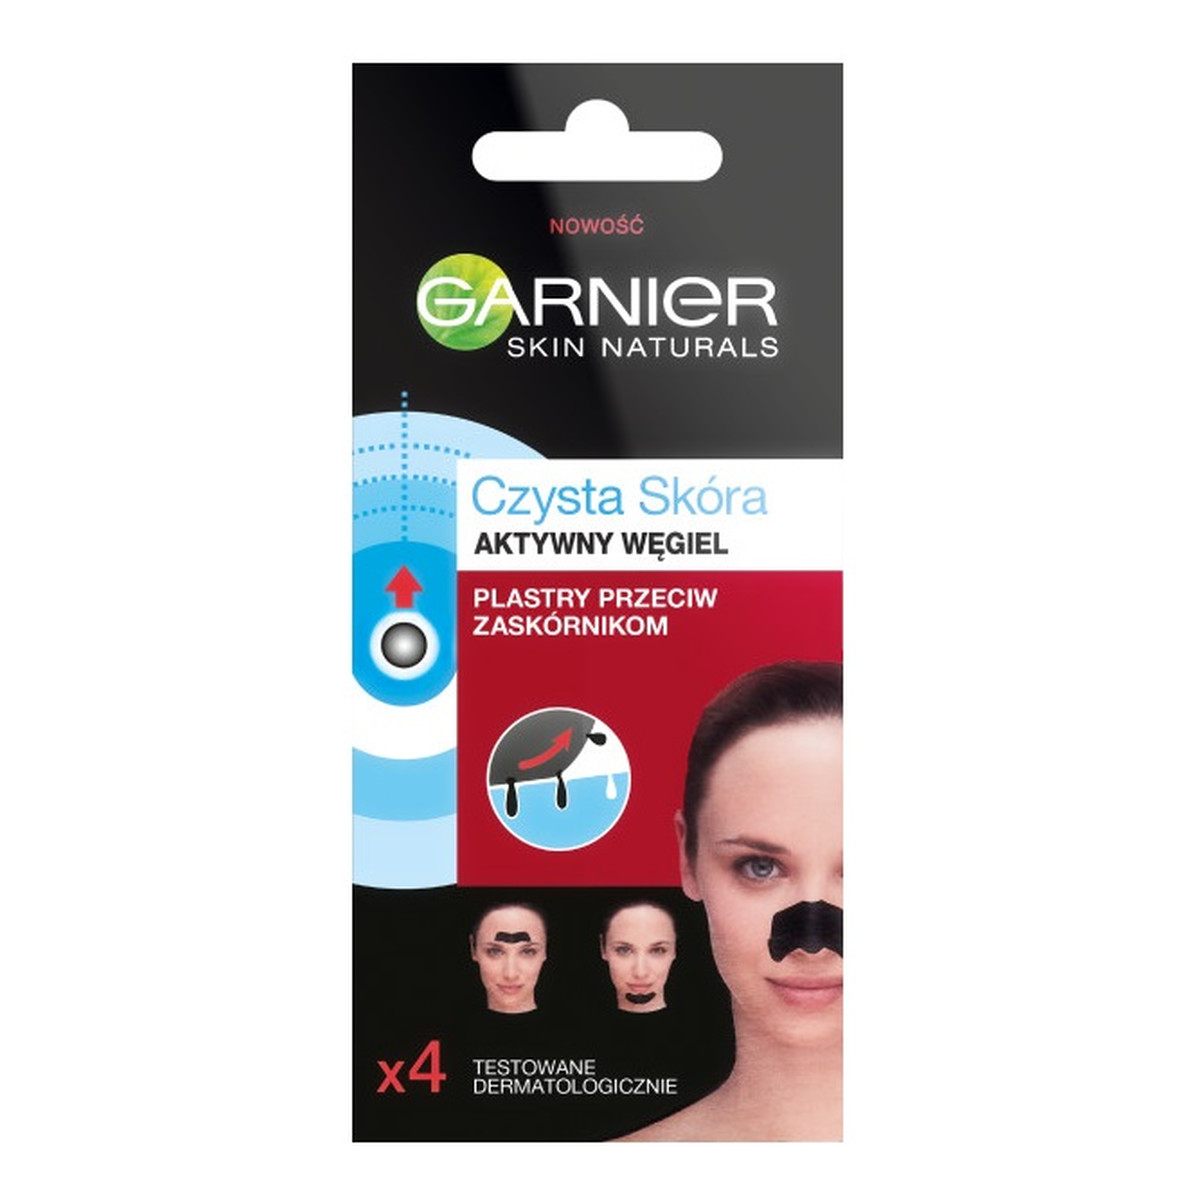 Garnier Skin Naturals Plastry przeciw zaskórnikom z aktywnym węglem 4 szt.